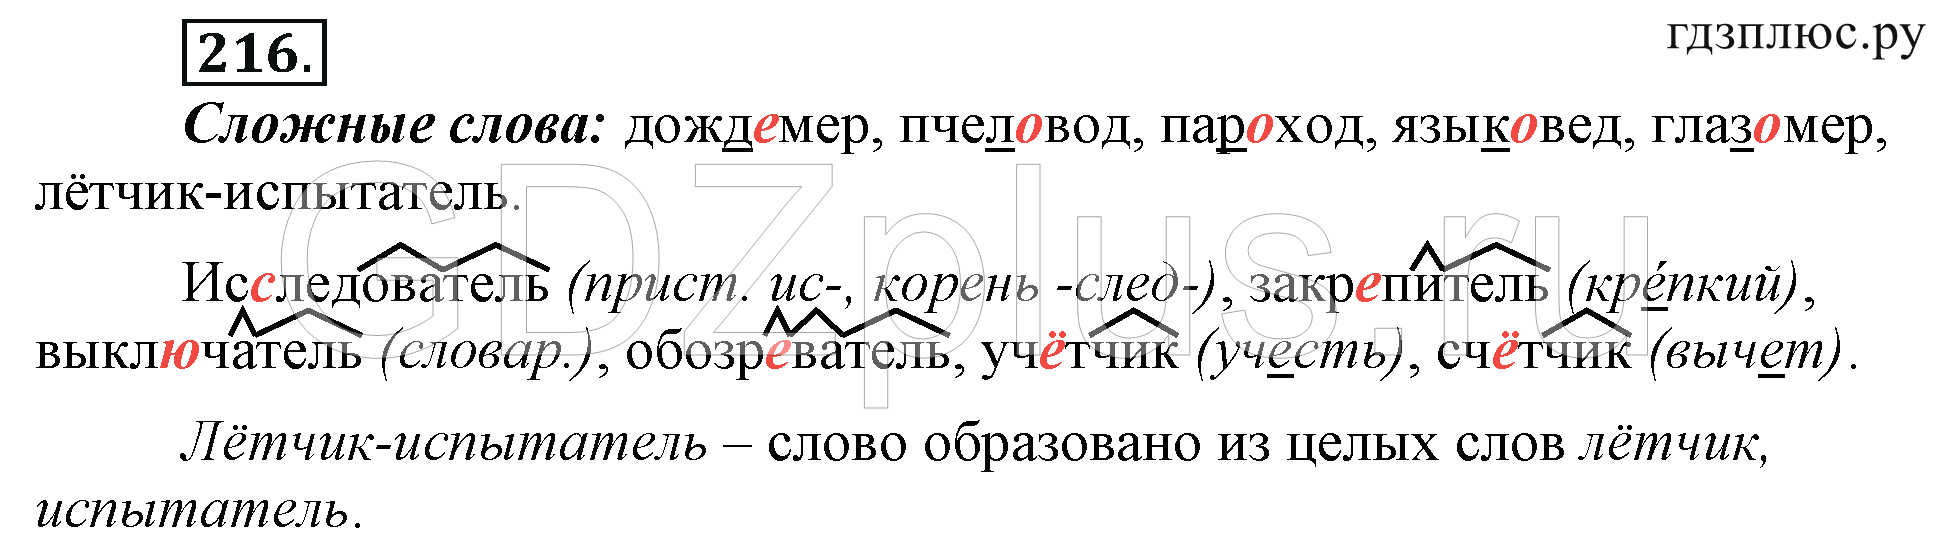 Телеграмма русский язык 6 класс фото 105